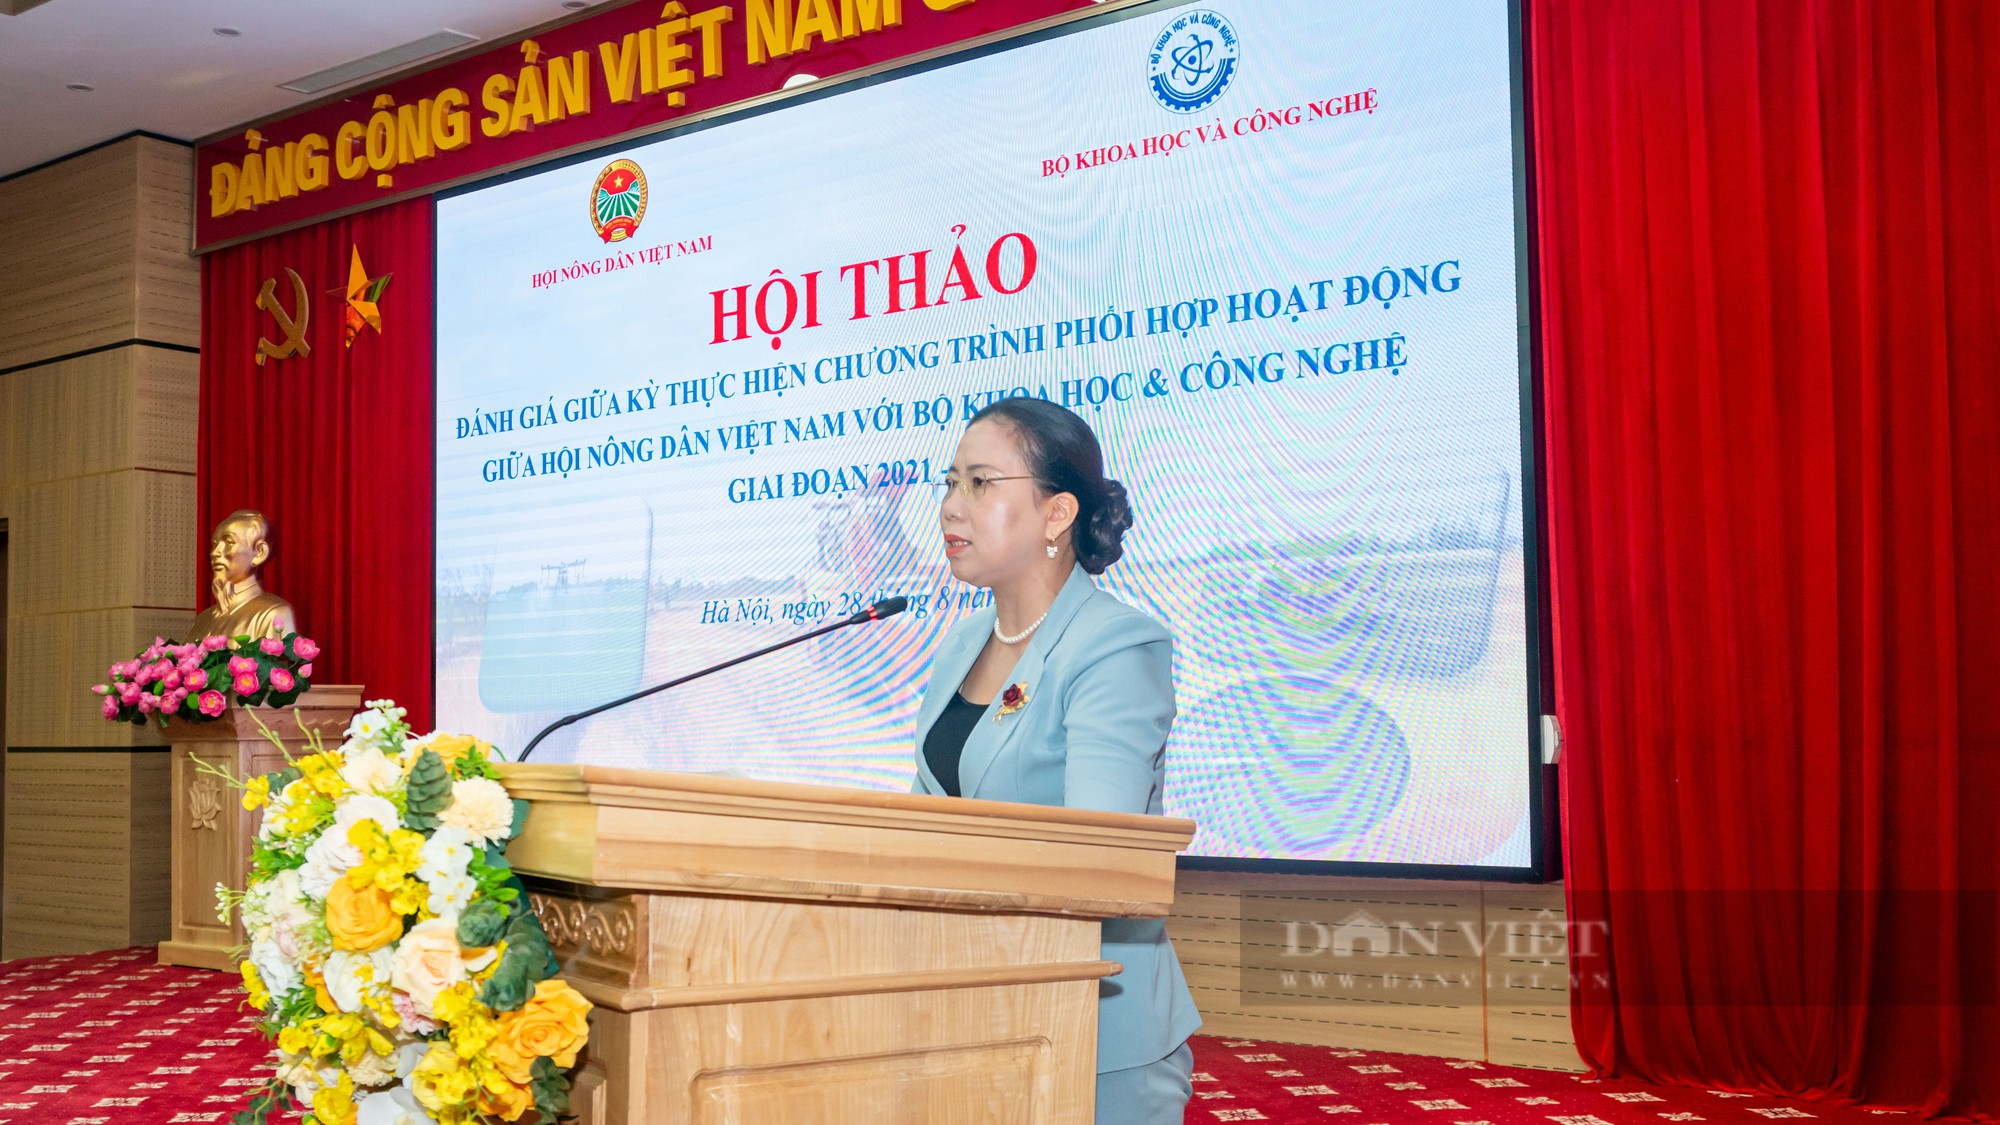 Hội thảo đánh giá Chương trình phối hợp hoạt động giữa Hội Nông dân Việt Nam và Bộ Khoa học và Công nghệ - Ảnh 2.